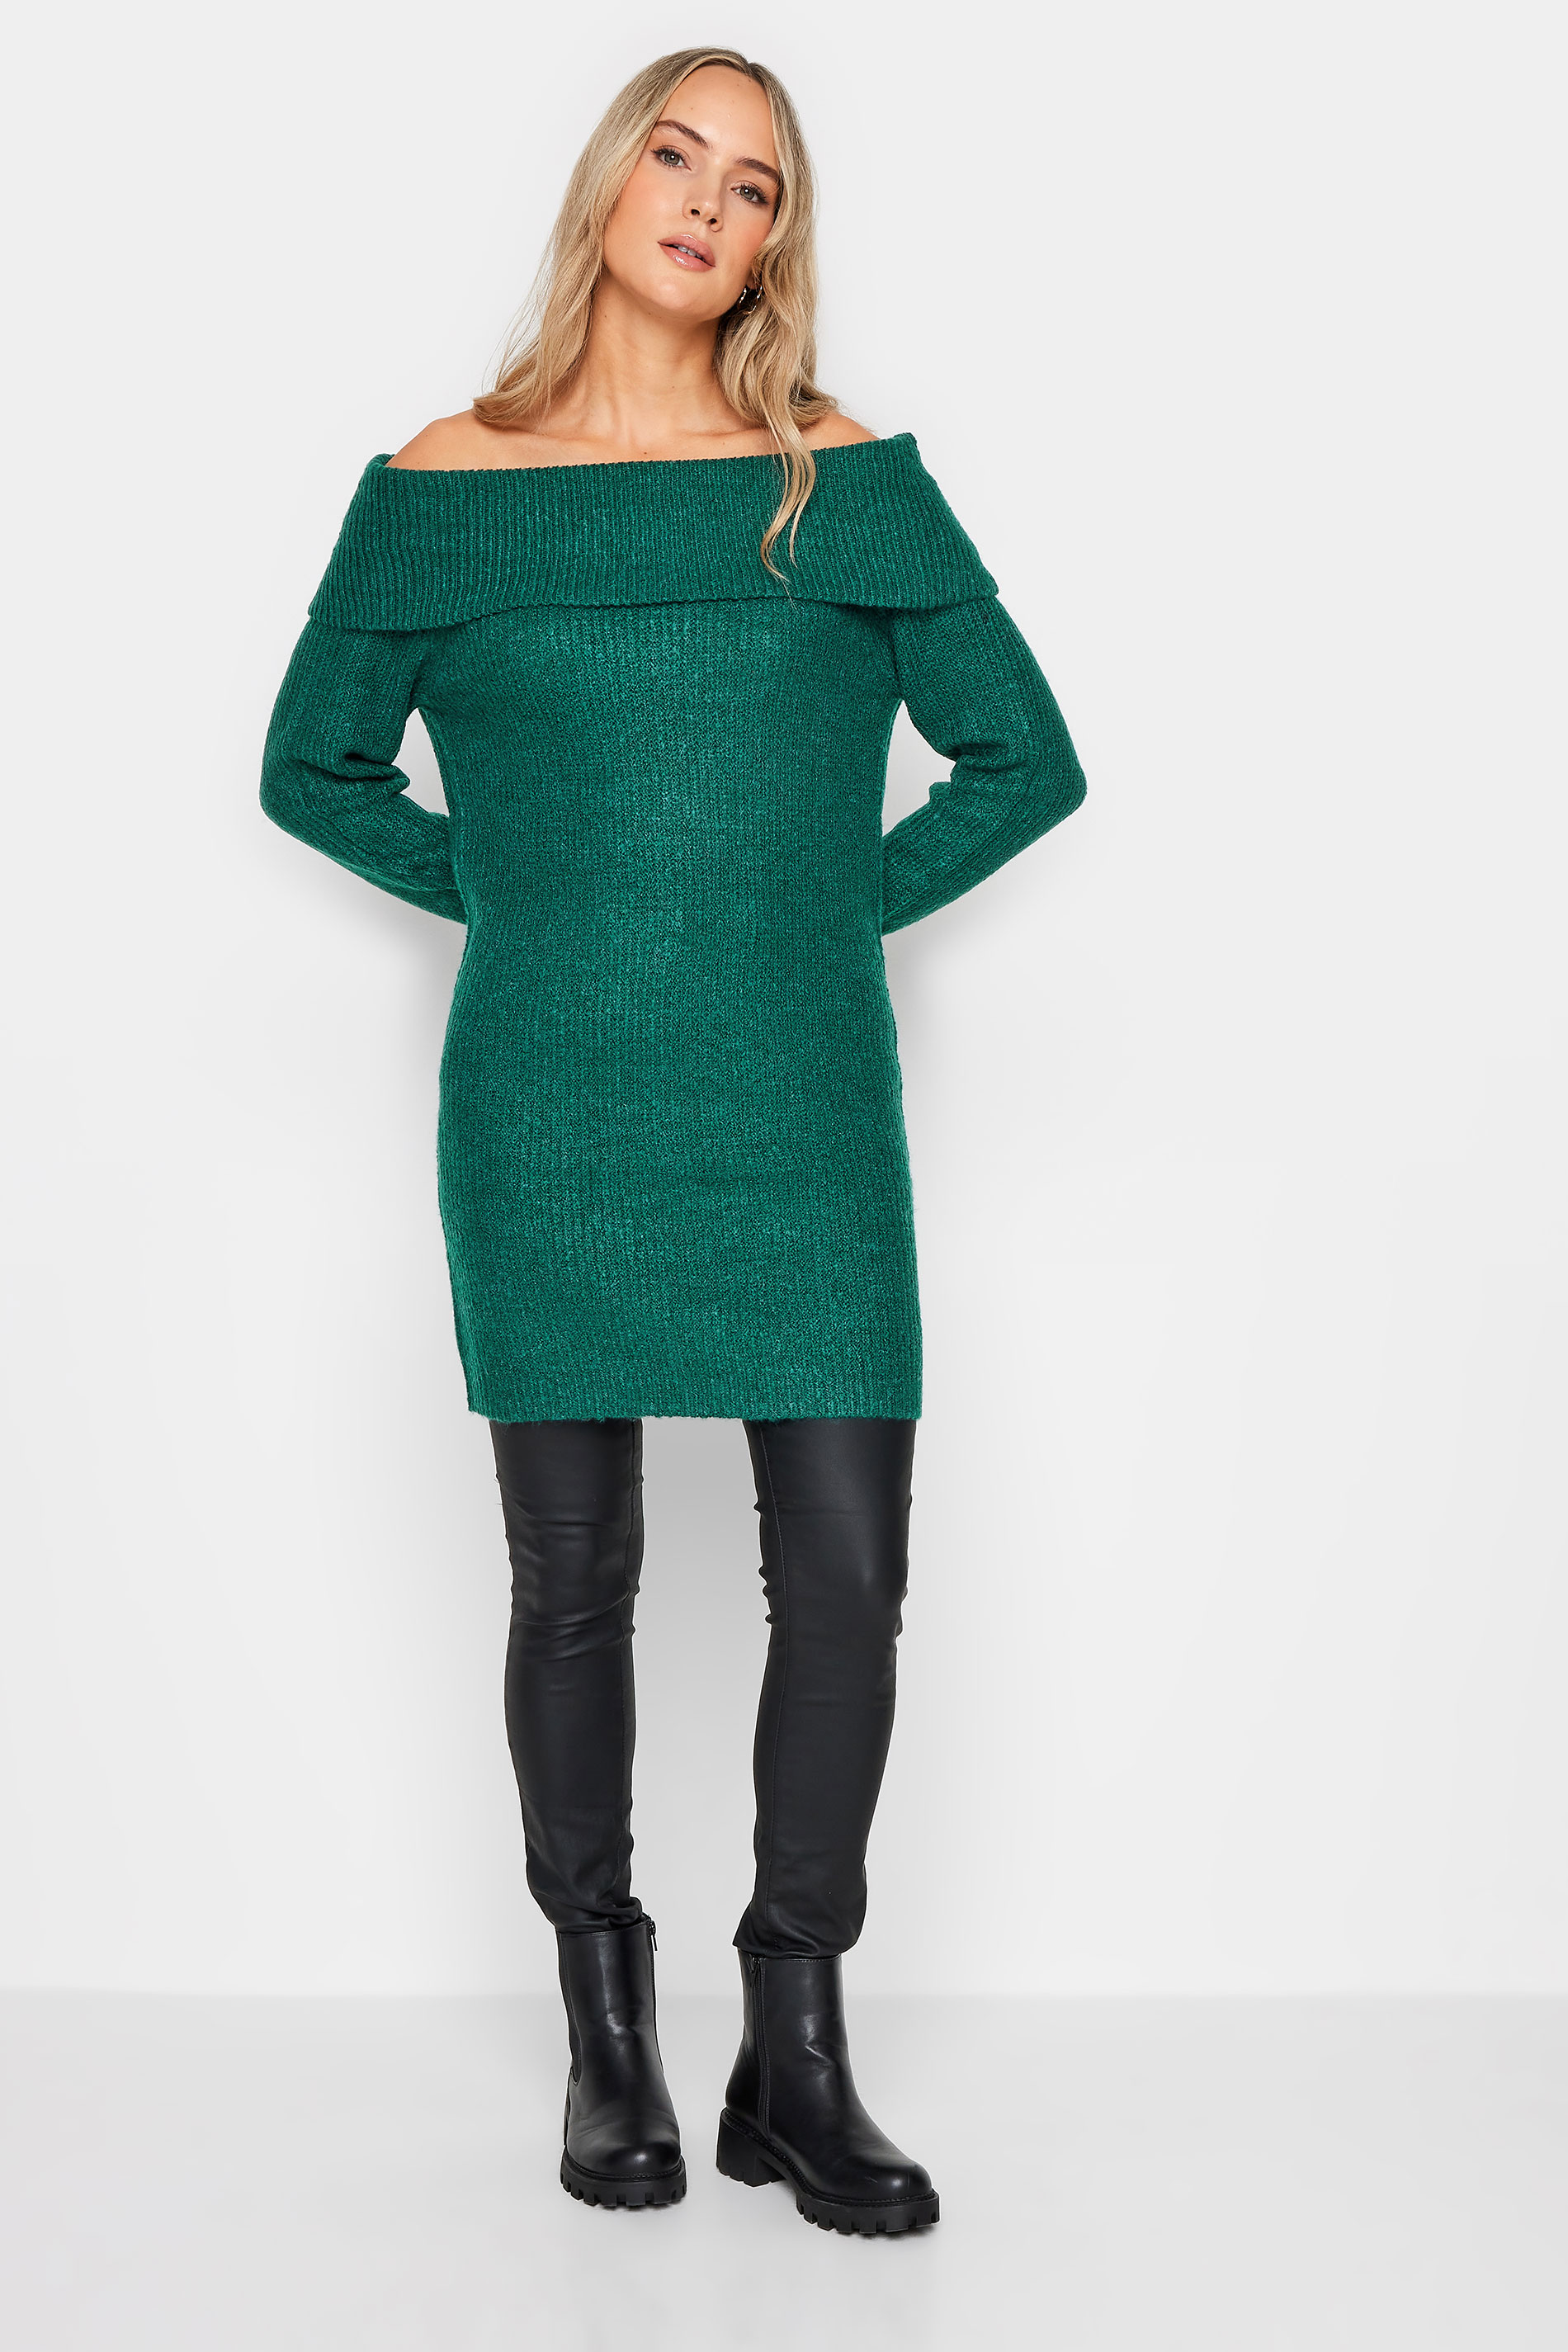 LTS Tall Dark Green Bardot Tunic Jumper Dress | Long Tall Sally 2